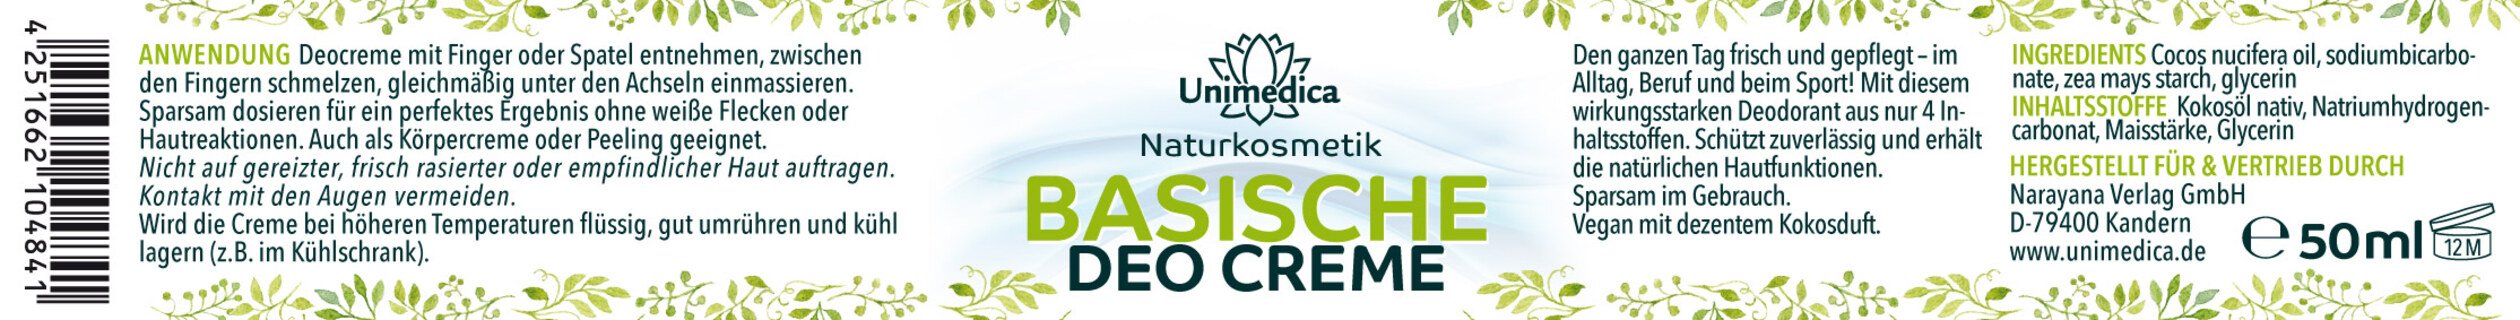 Basische Deo Creme - 50 ml - von Unimedica